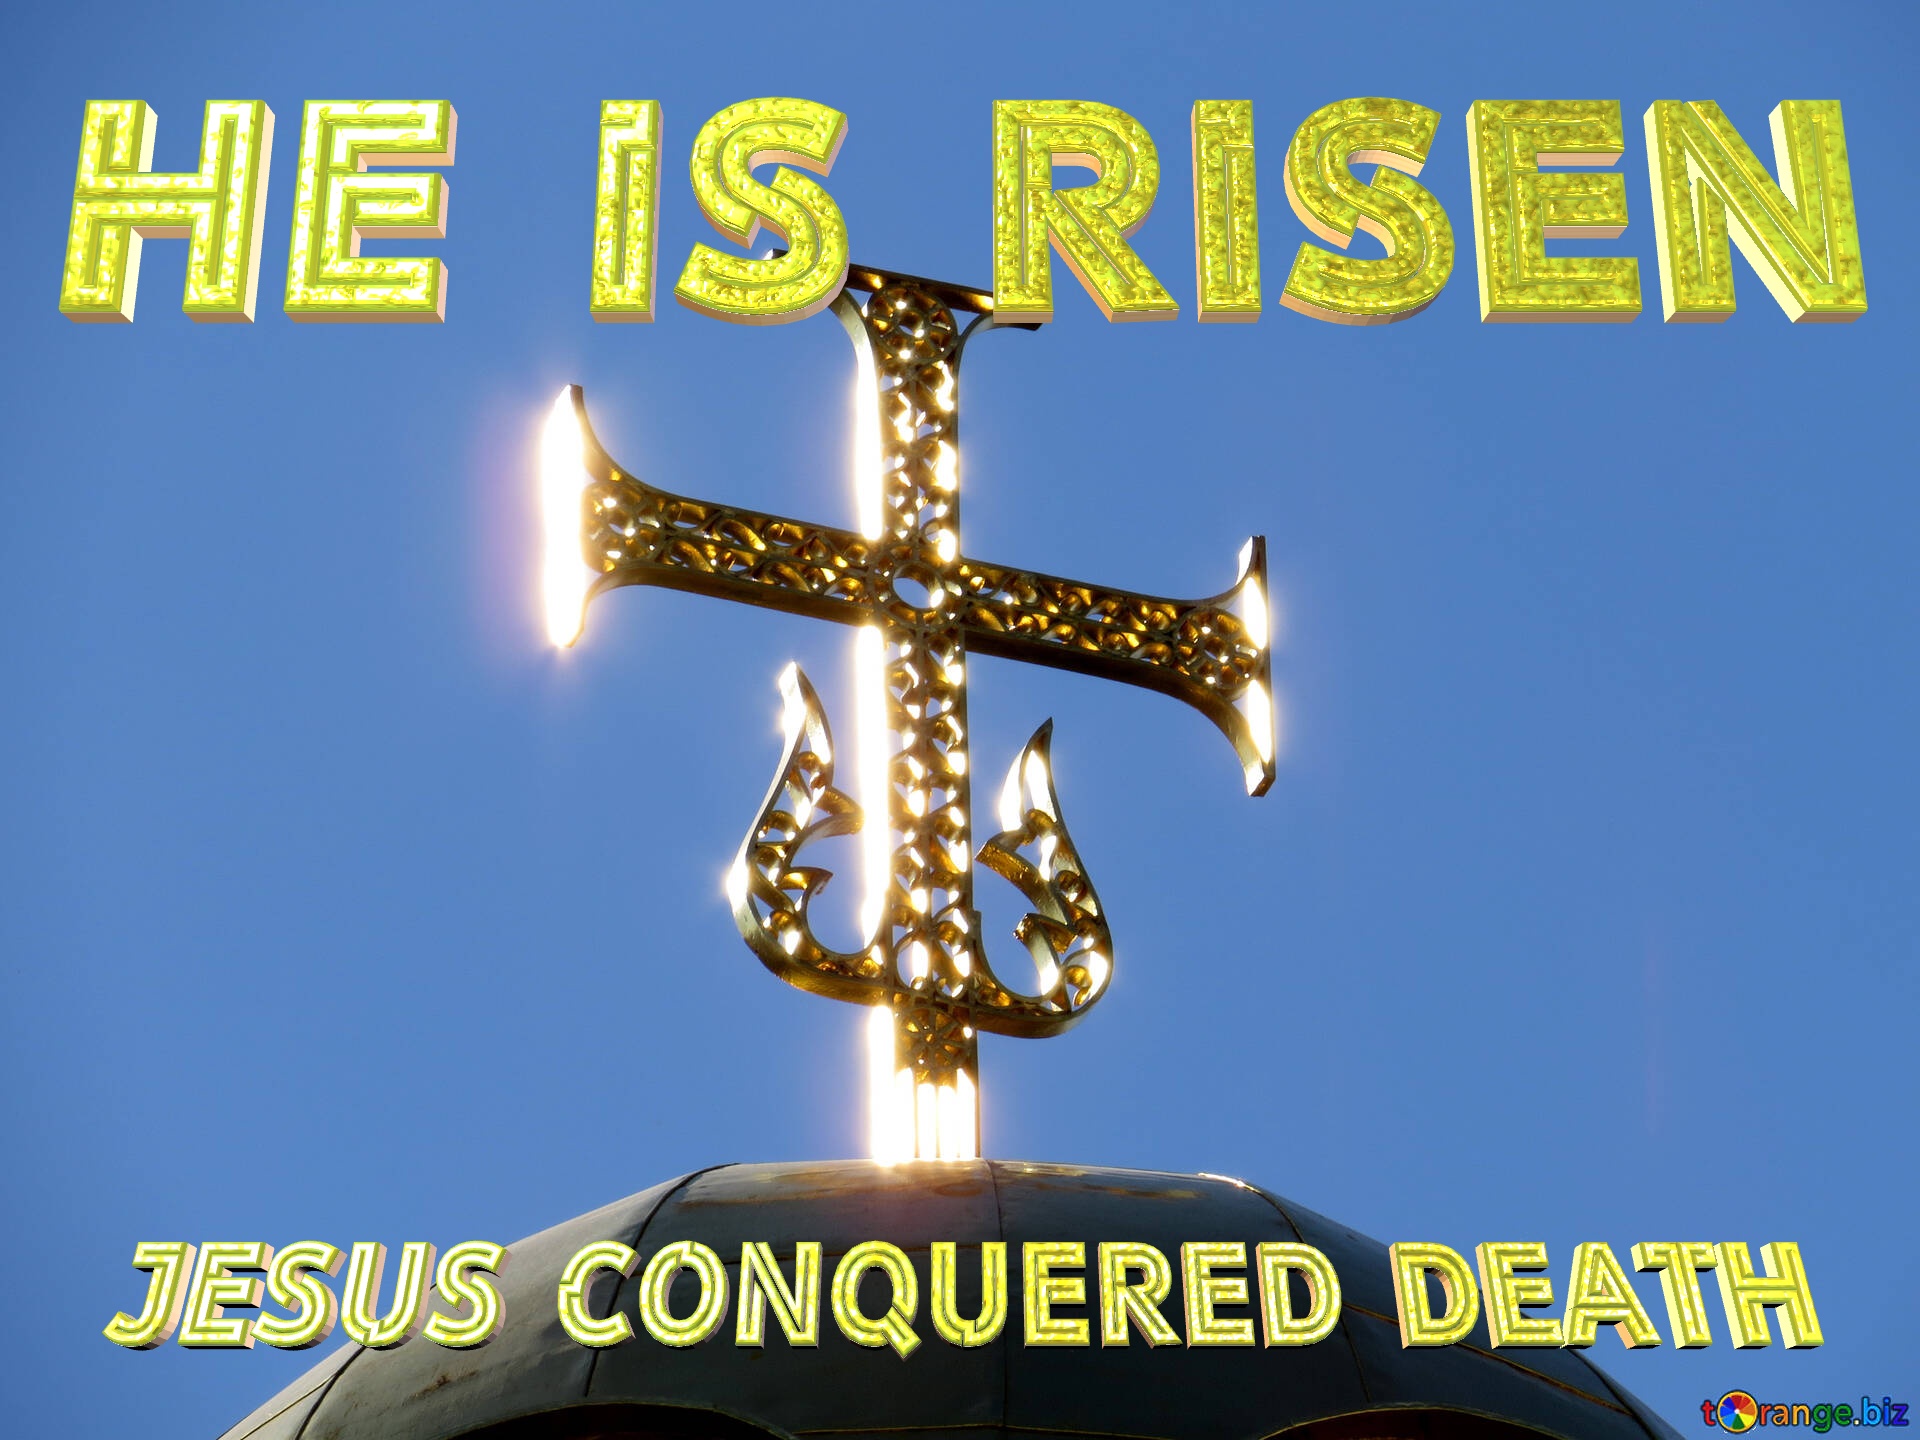 Jesus conquered death  He is risen  Ukrainian cross №41049